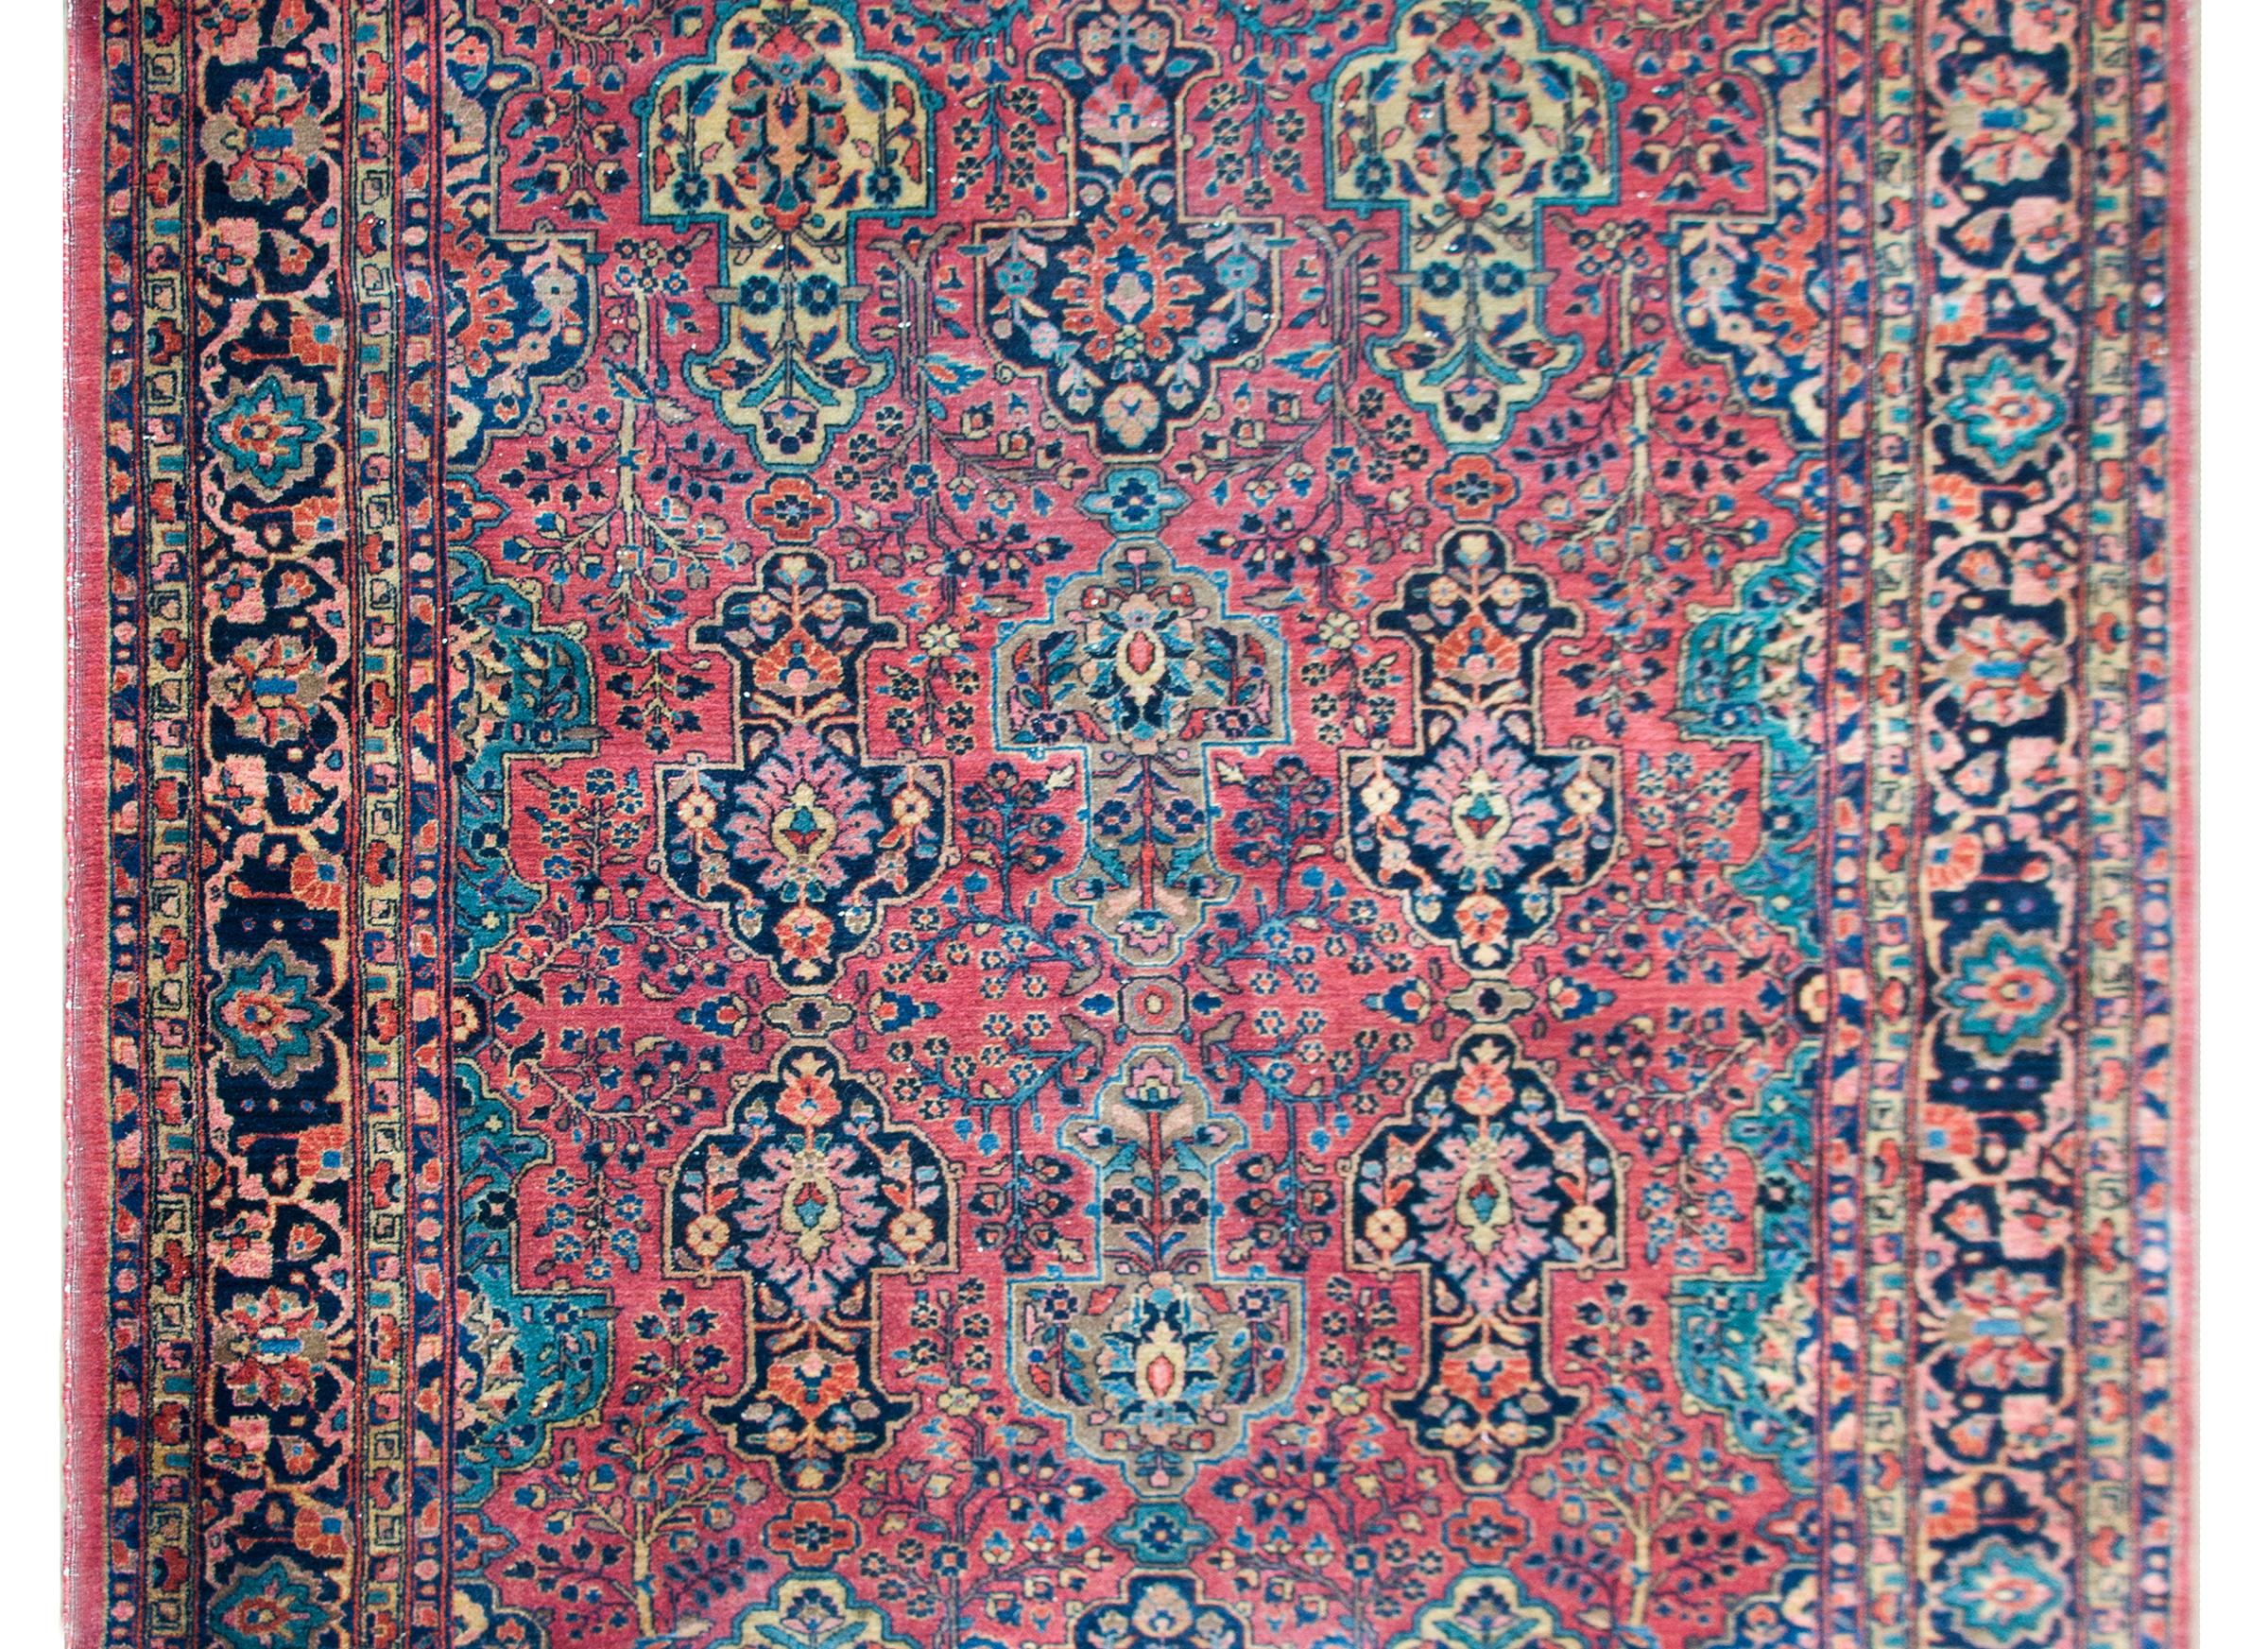 Fantastique tapis sarouk persan du début du 20e siècle, avec un magnifique champ à motifs floraux en miroir, avec de grandes formes florales stylisées au milieu d'un champ densément tissé d'arbres de vie et d'autres fleurs, le tout tissé dans de